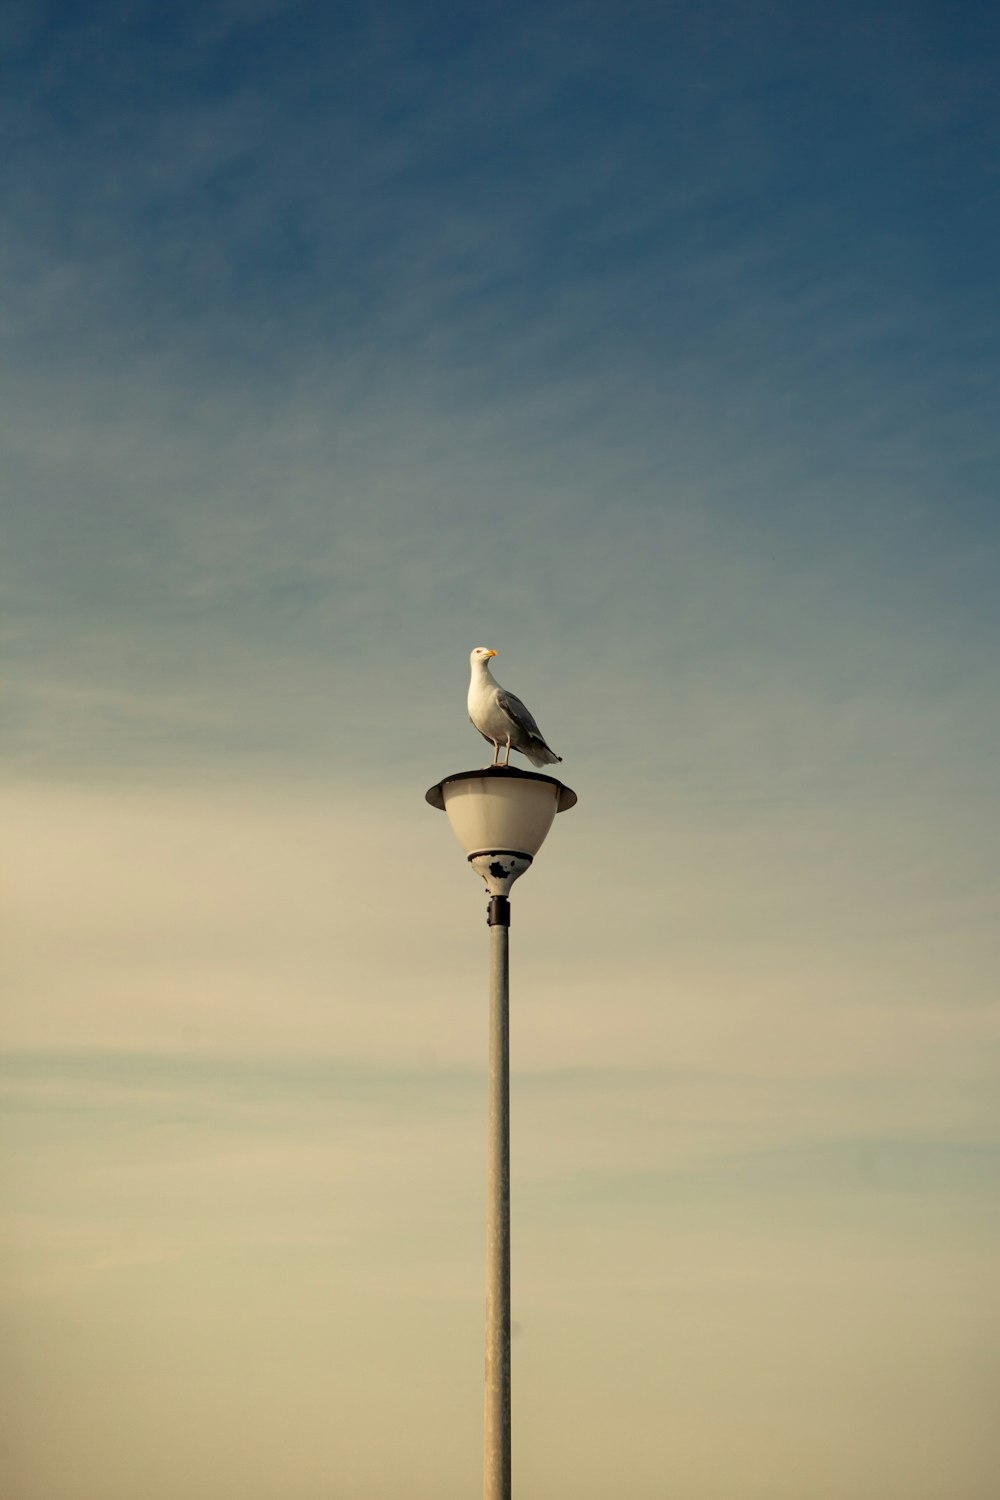 white bird on black lamp post under gray sky